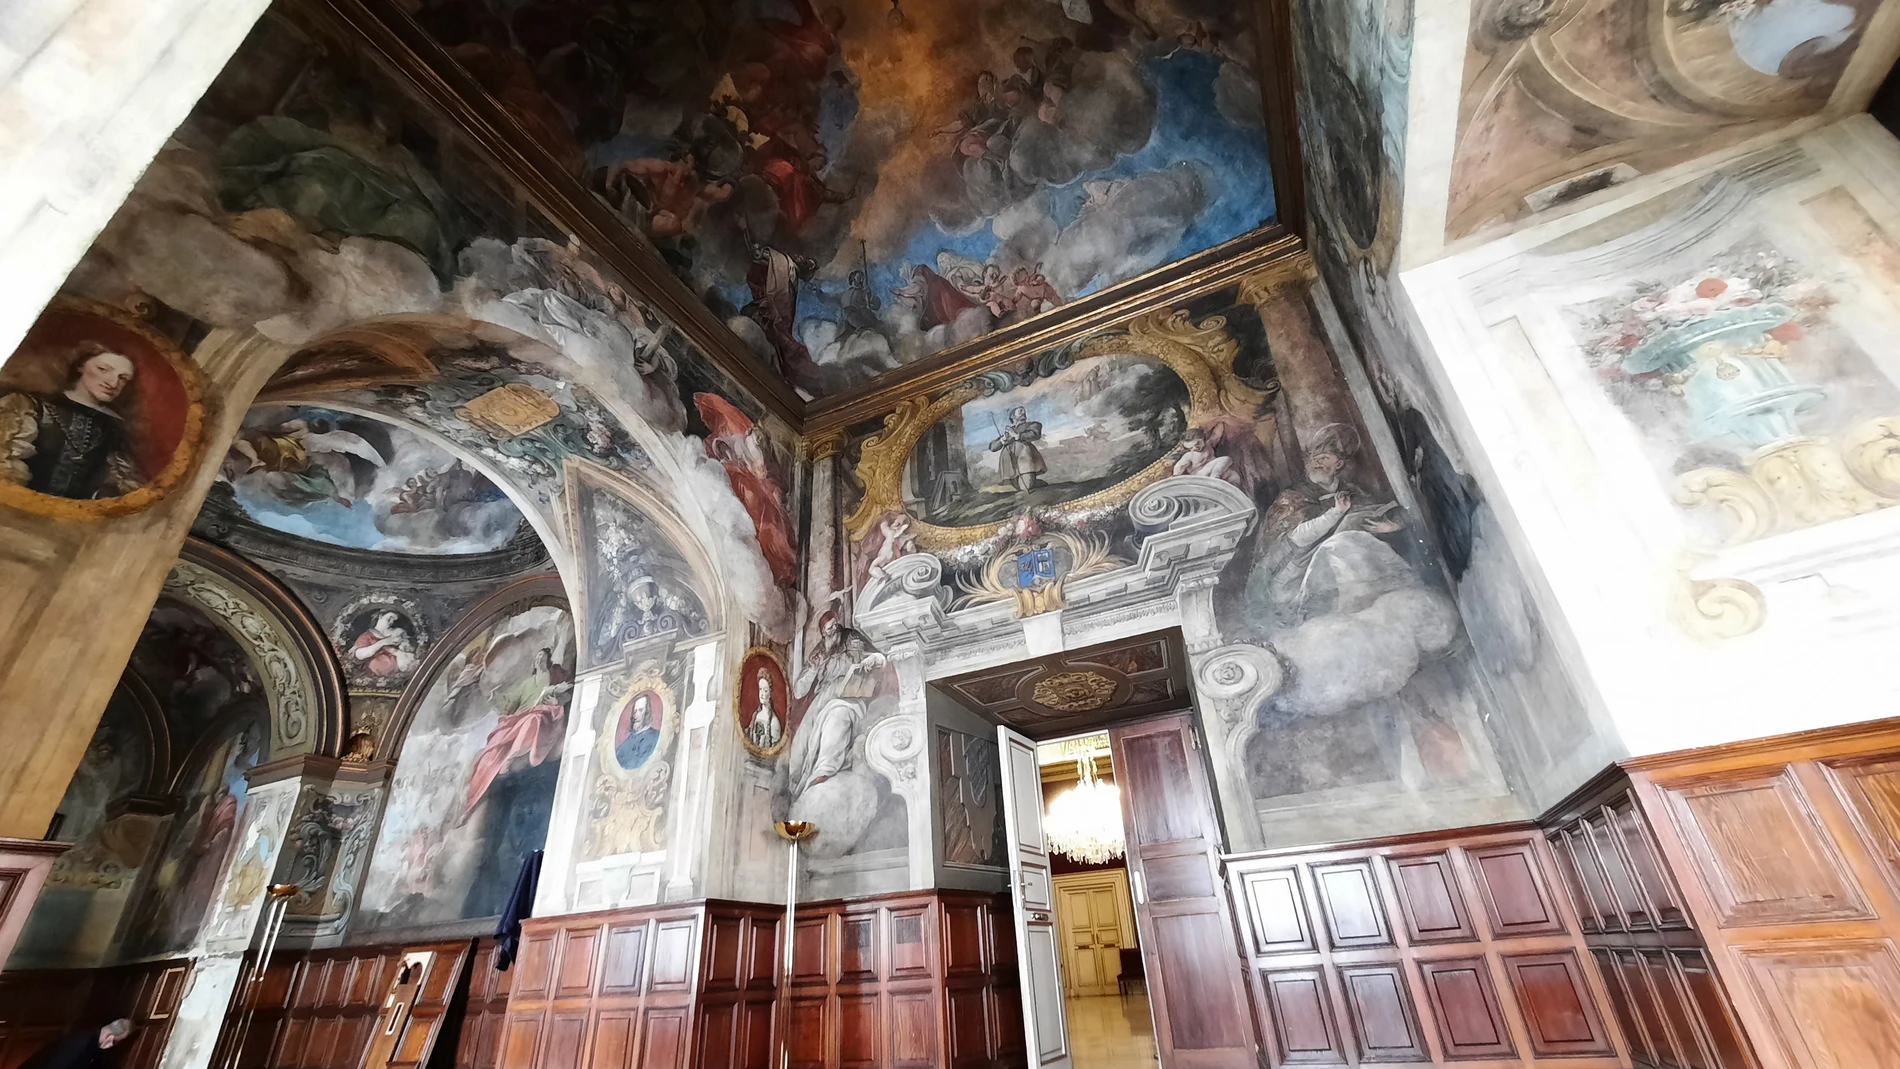 Los frescos de Antonio Palomino, de finales del siglo XVII, son una de las prioridades dentro de la rehabilitación emprendida por el Ayuntamiento